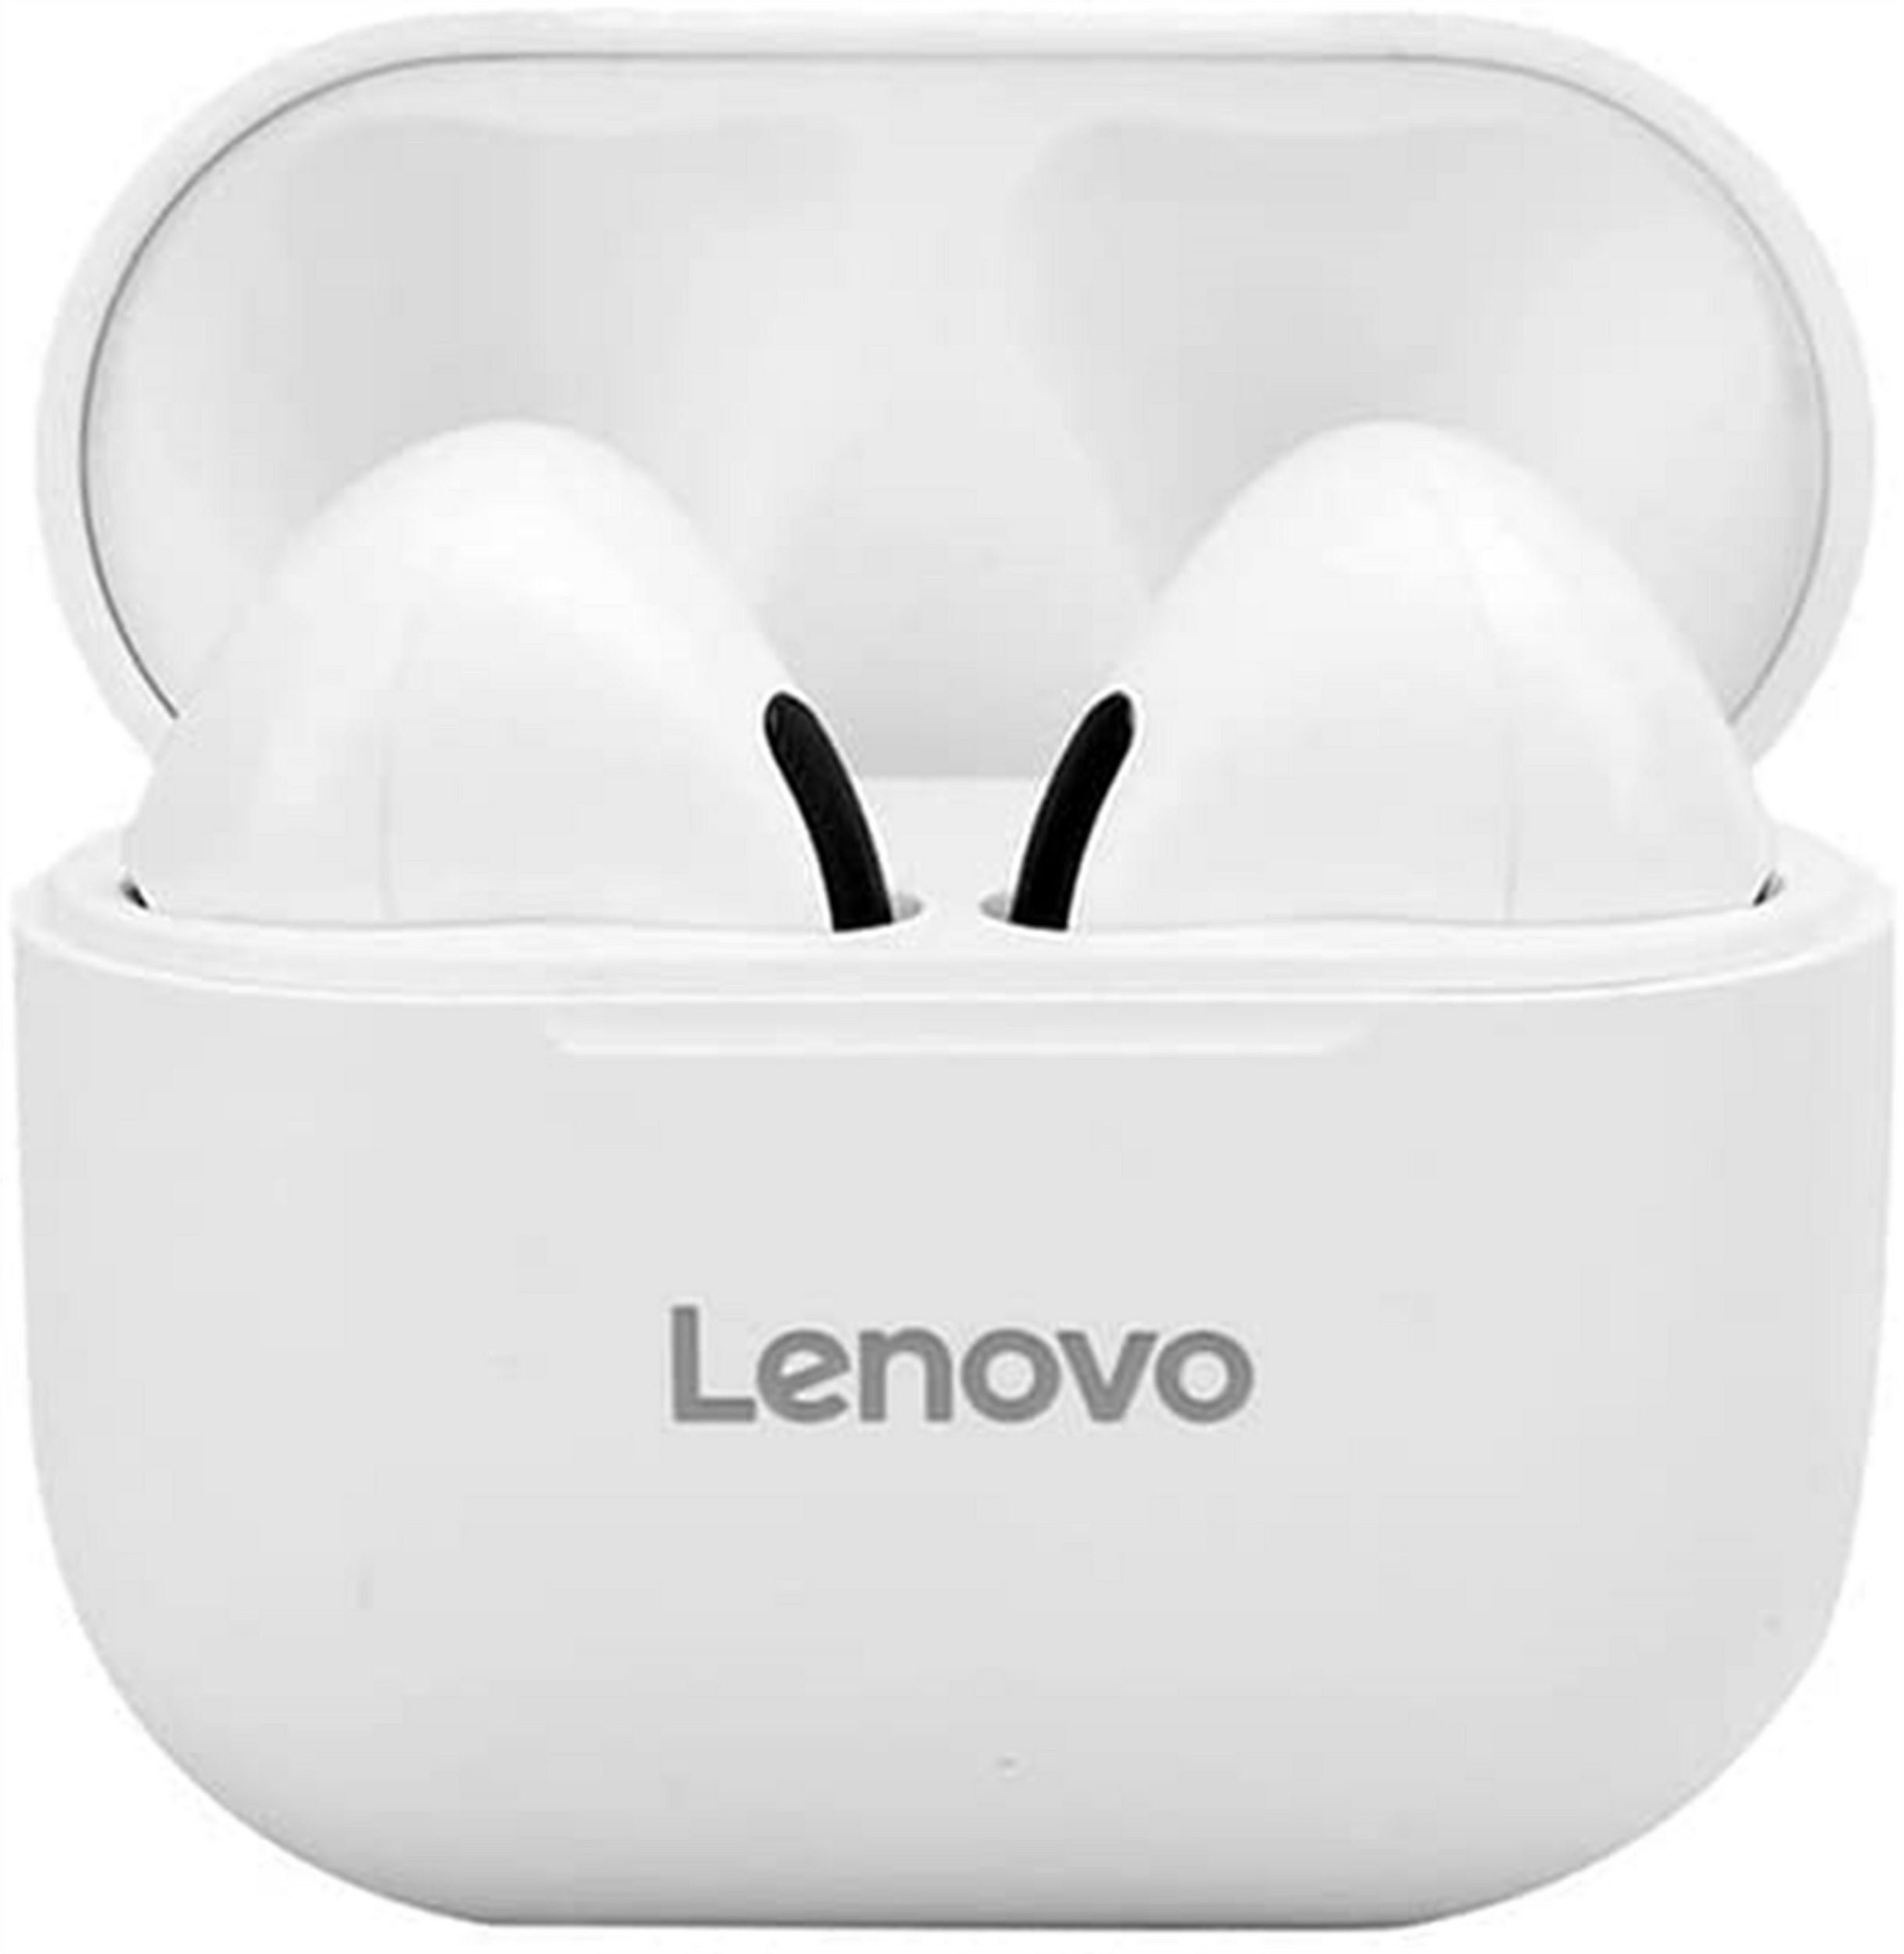 Lenovo LP40 mit Touch-Steuerung Bluetooth-Kopfhörer (True Wireless, Siri, Bluetooth 5.0, kabellos, Stereo-Ohrhörer mit 300 mAh Kopfhörer-Ladehülle - Weiss) Weiß